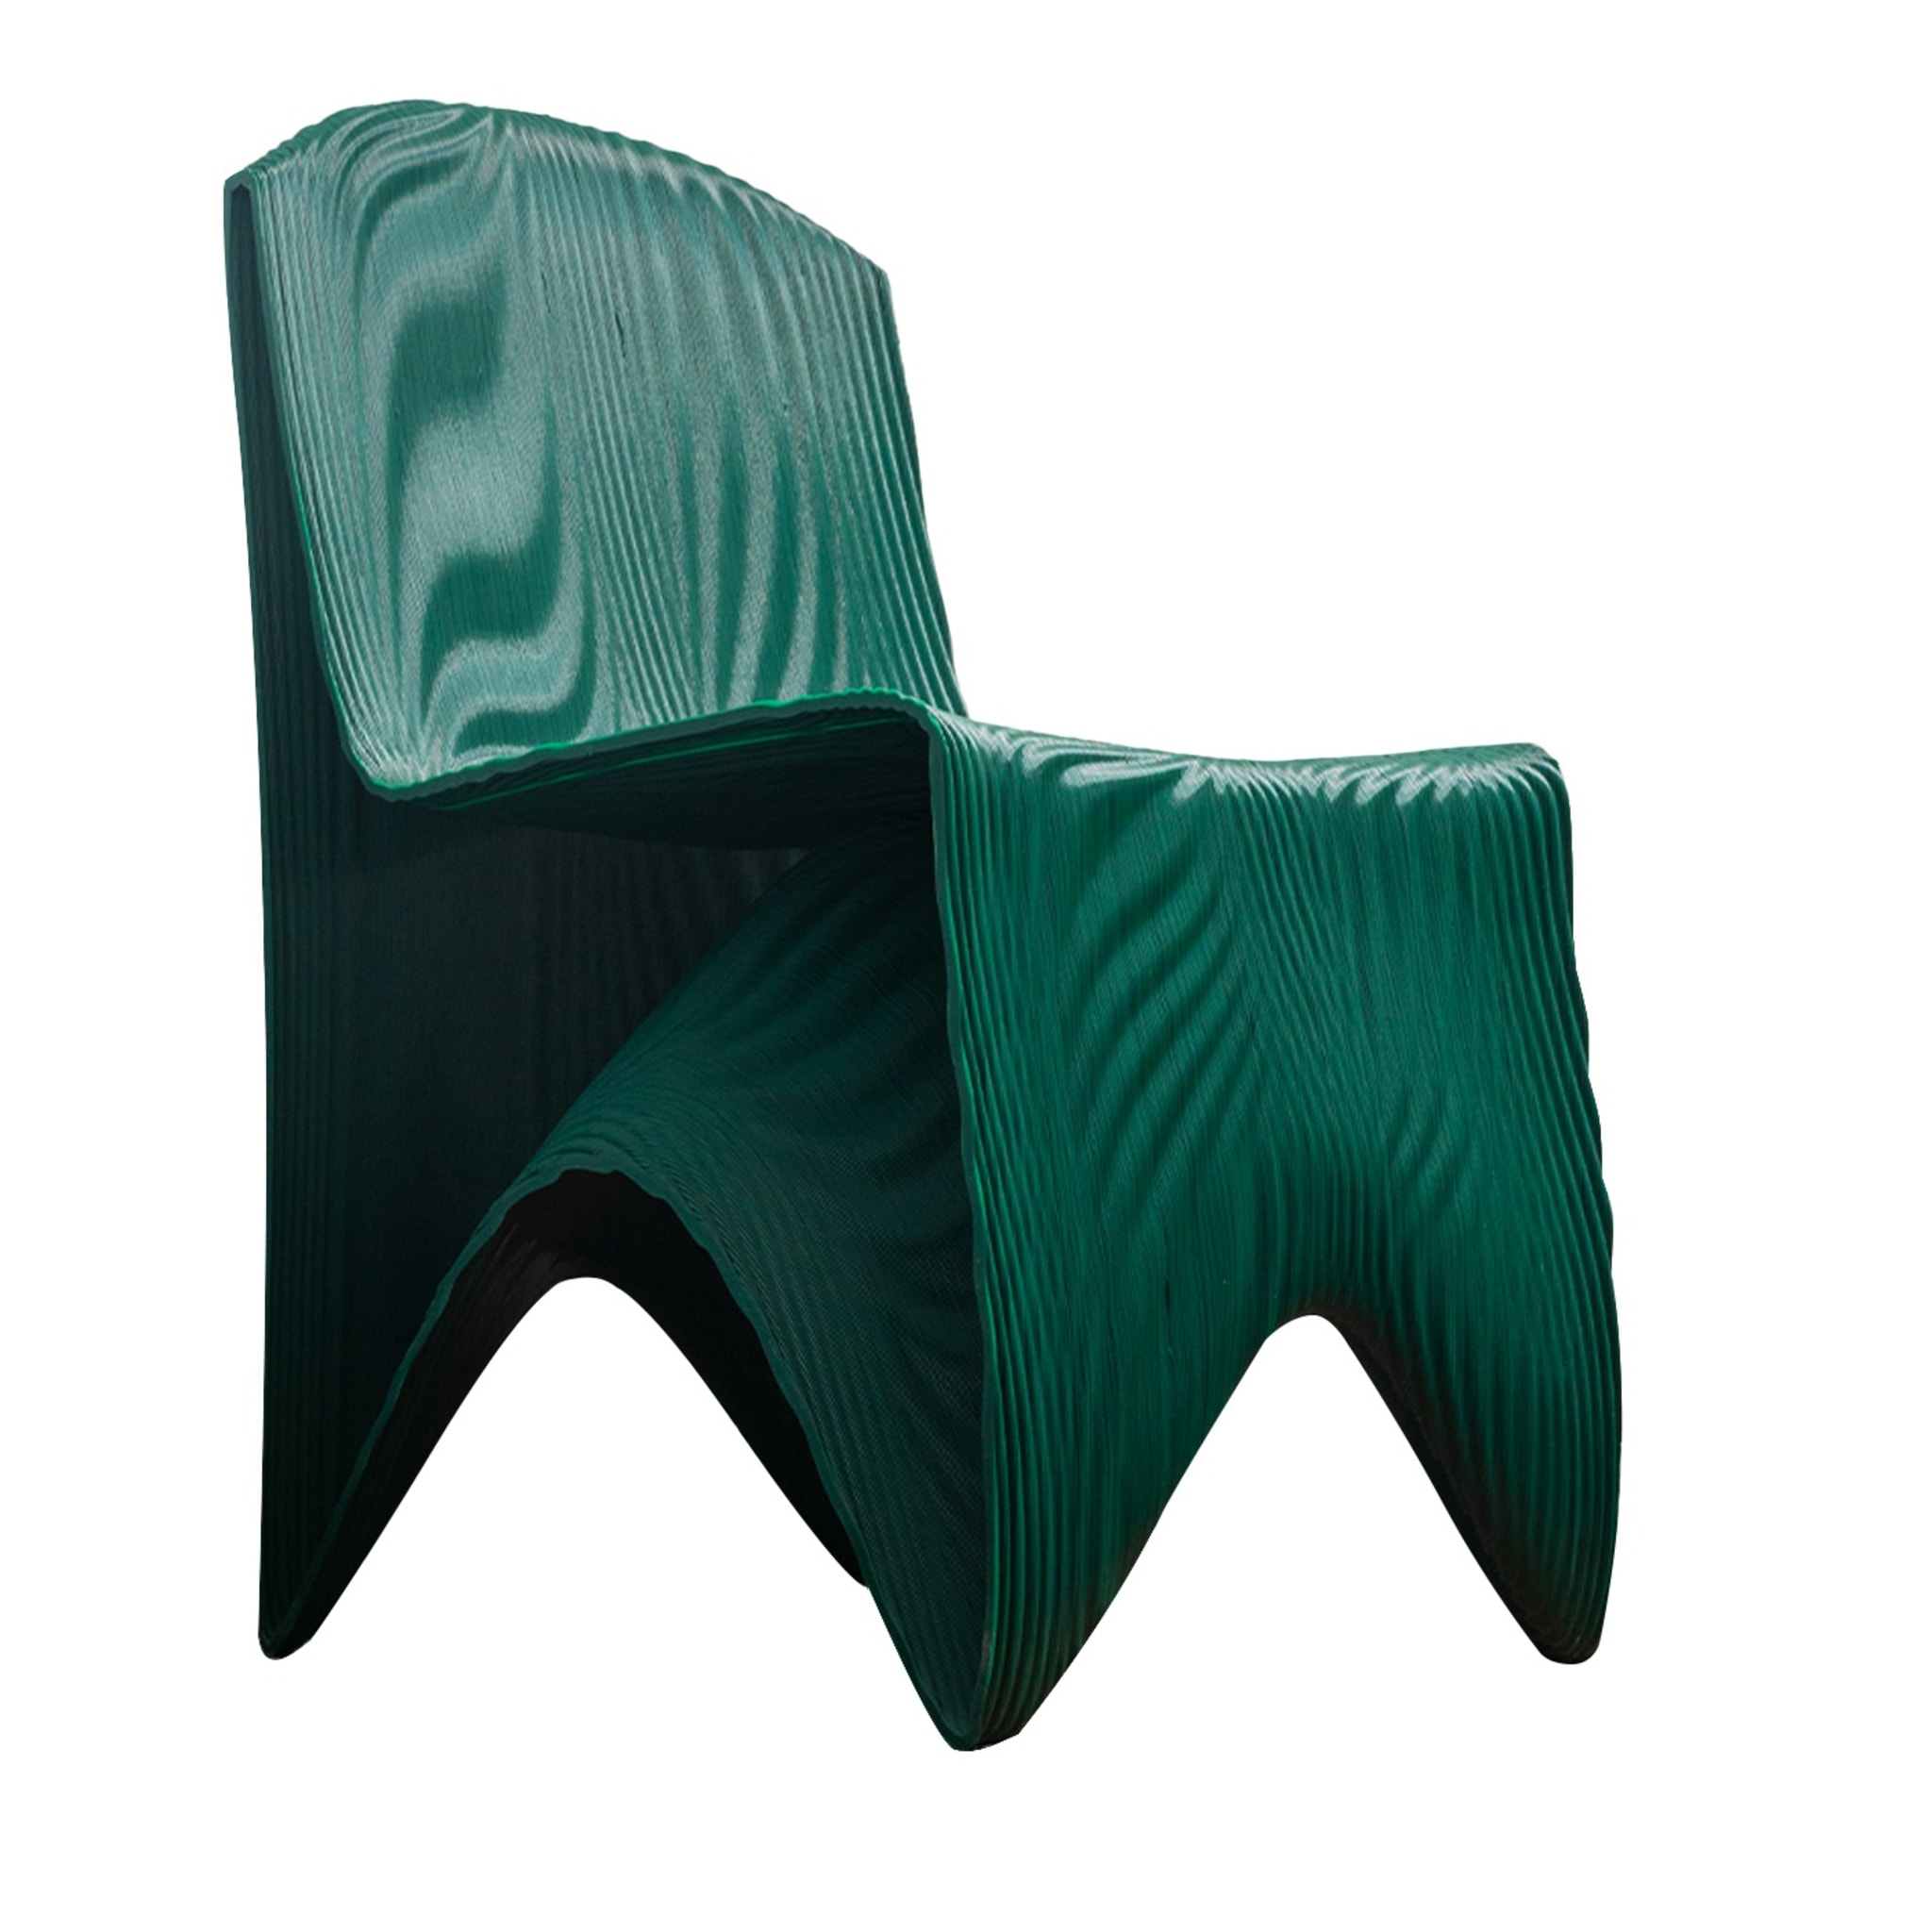 Santorini Green Chair - Main view